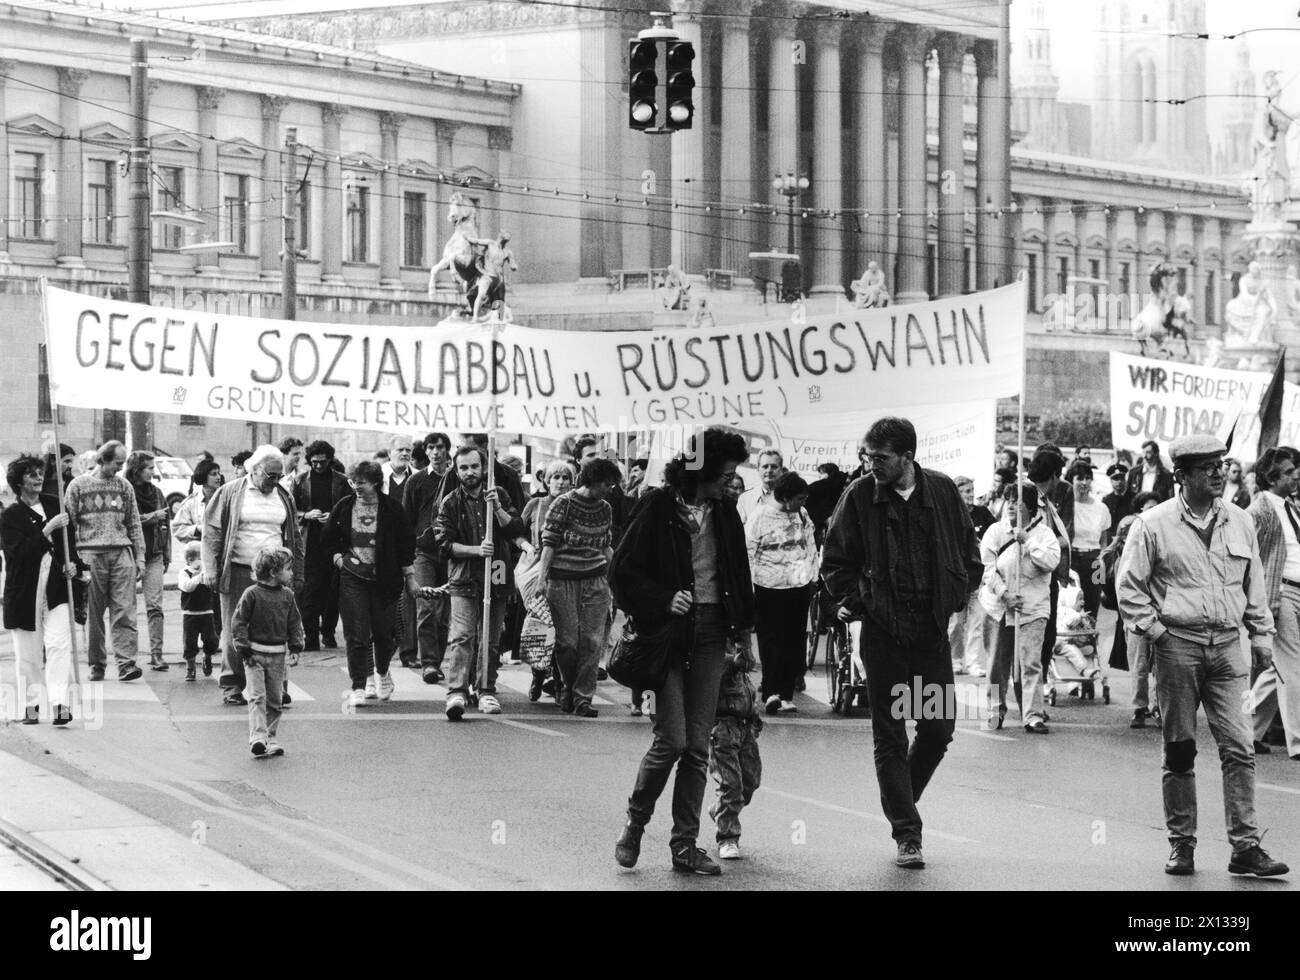 Wien am 15. Oktober 1988: Rund 2,500 Menschen demonstrierten in der Wiener Stadt gegen Sozialeinschnitte, Rassismus, Vollbeschäftigung und Umverteilung. - 19881015 PD0004 - Rechteinfo: Rechte verwaltet (RM) Stockfoto